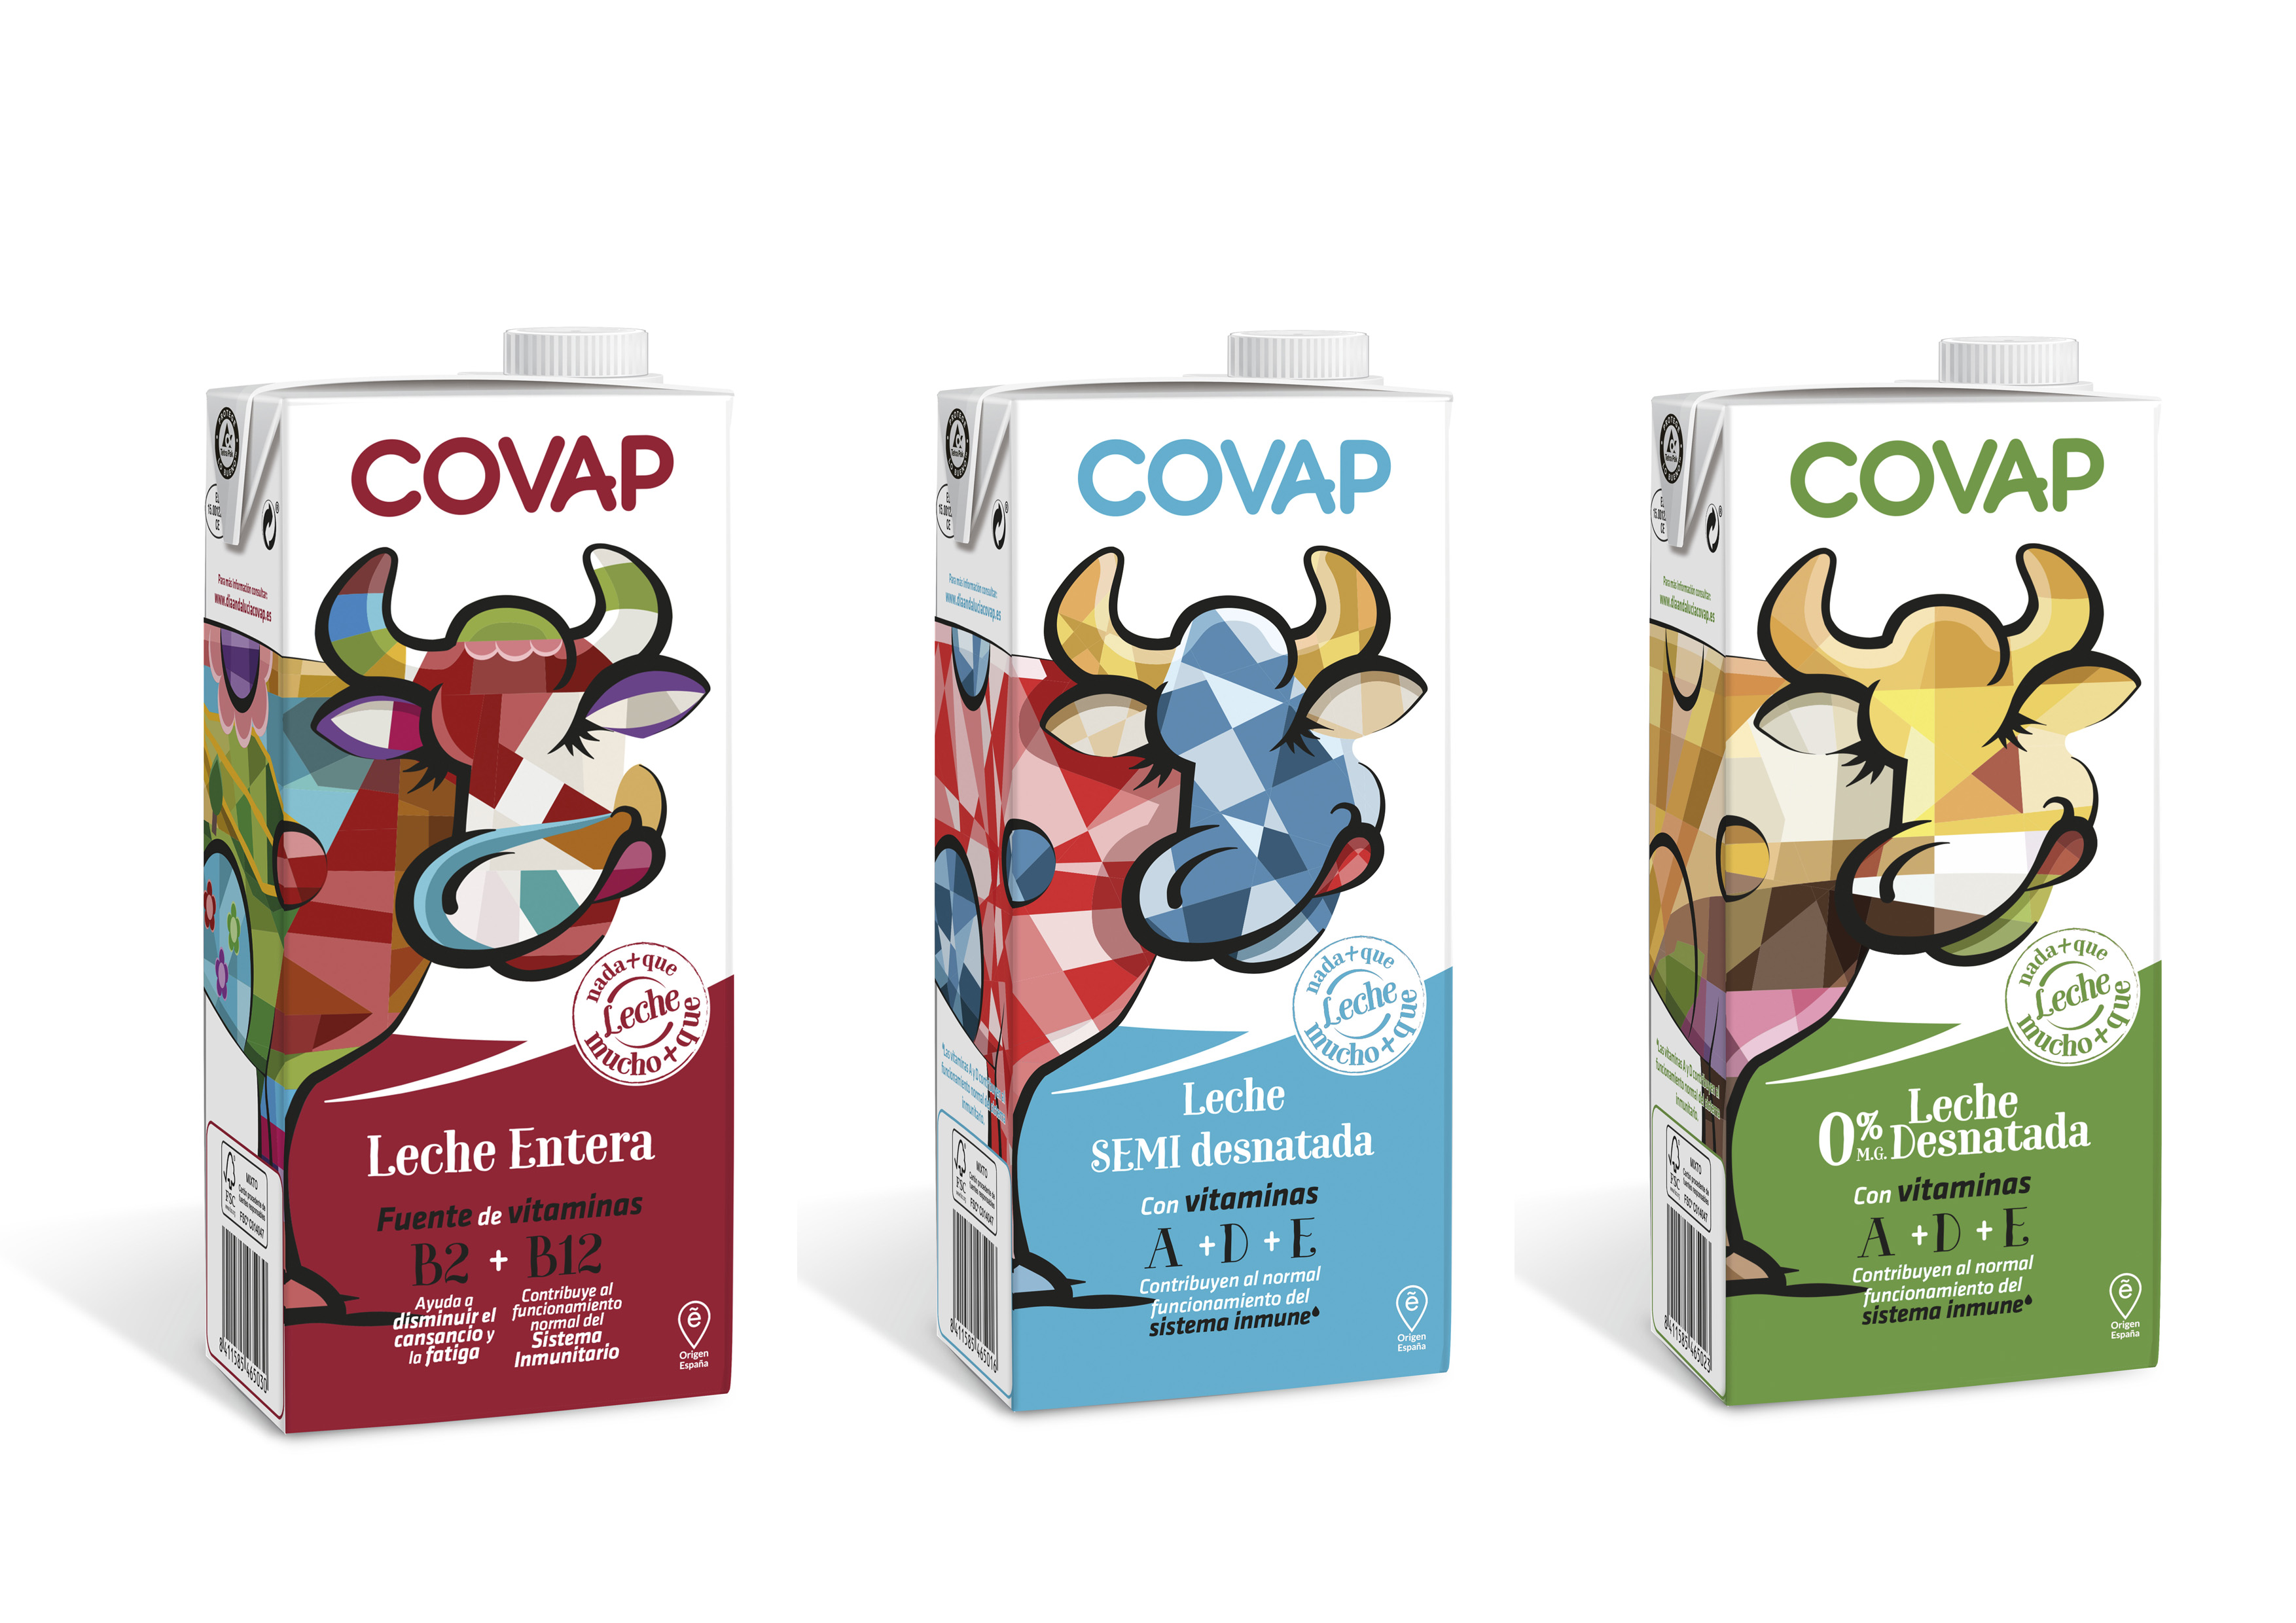 Lácteos COVAP lanza un envase exclusivo diseñado por jóvenes andaluces | COVAP